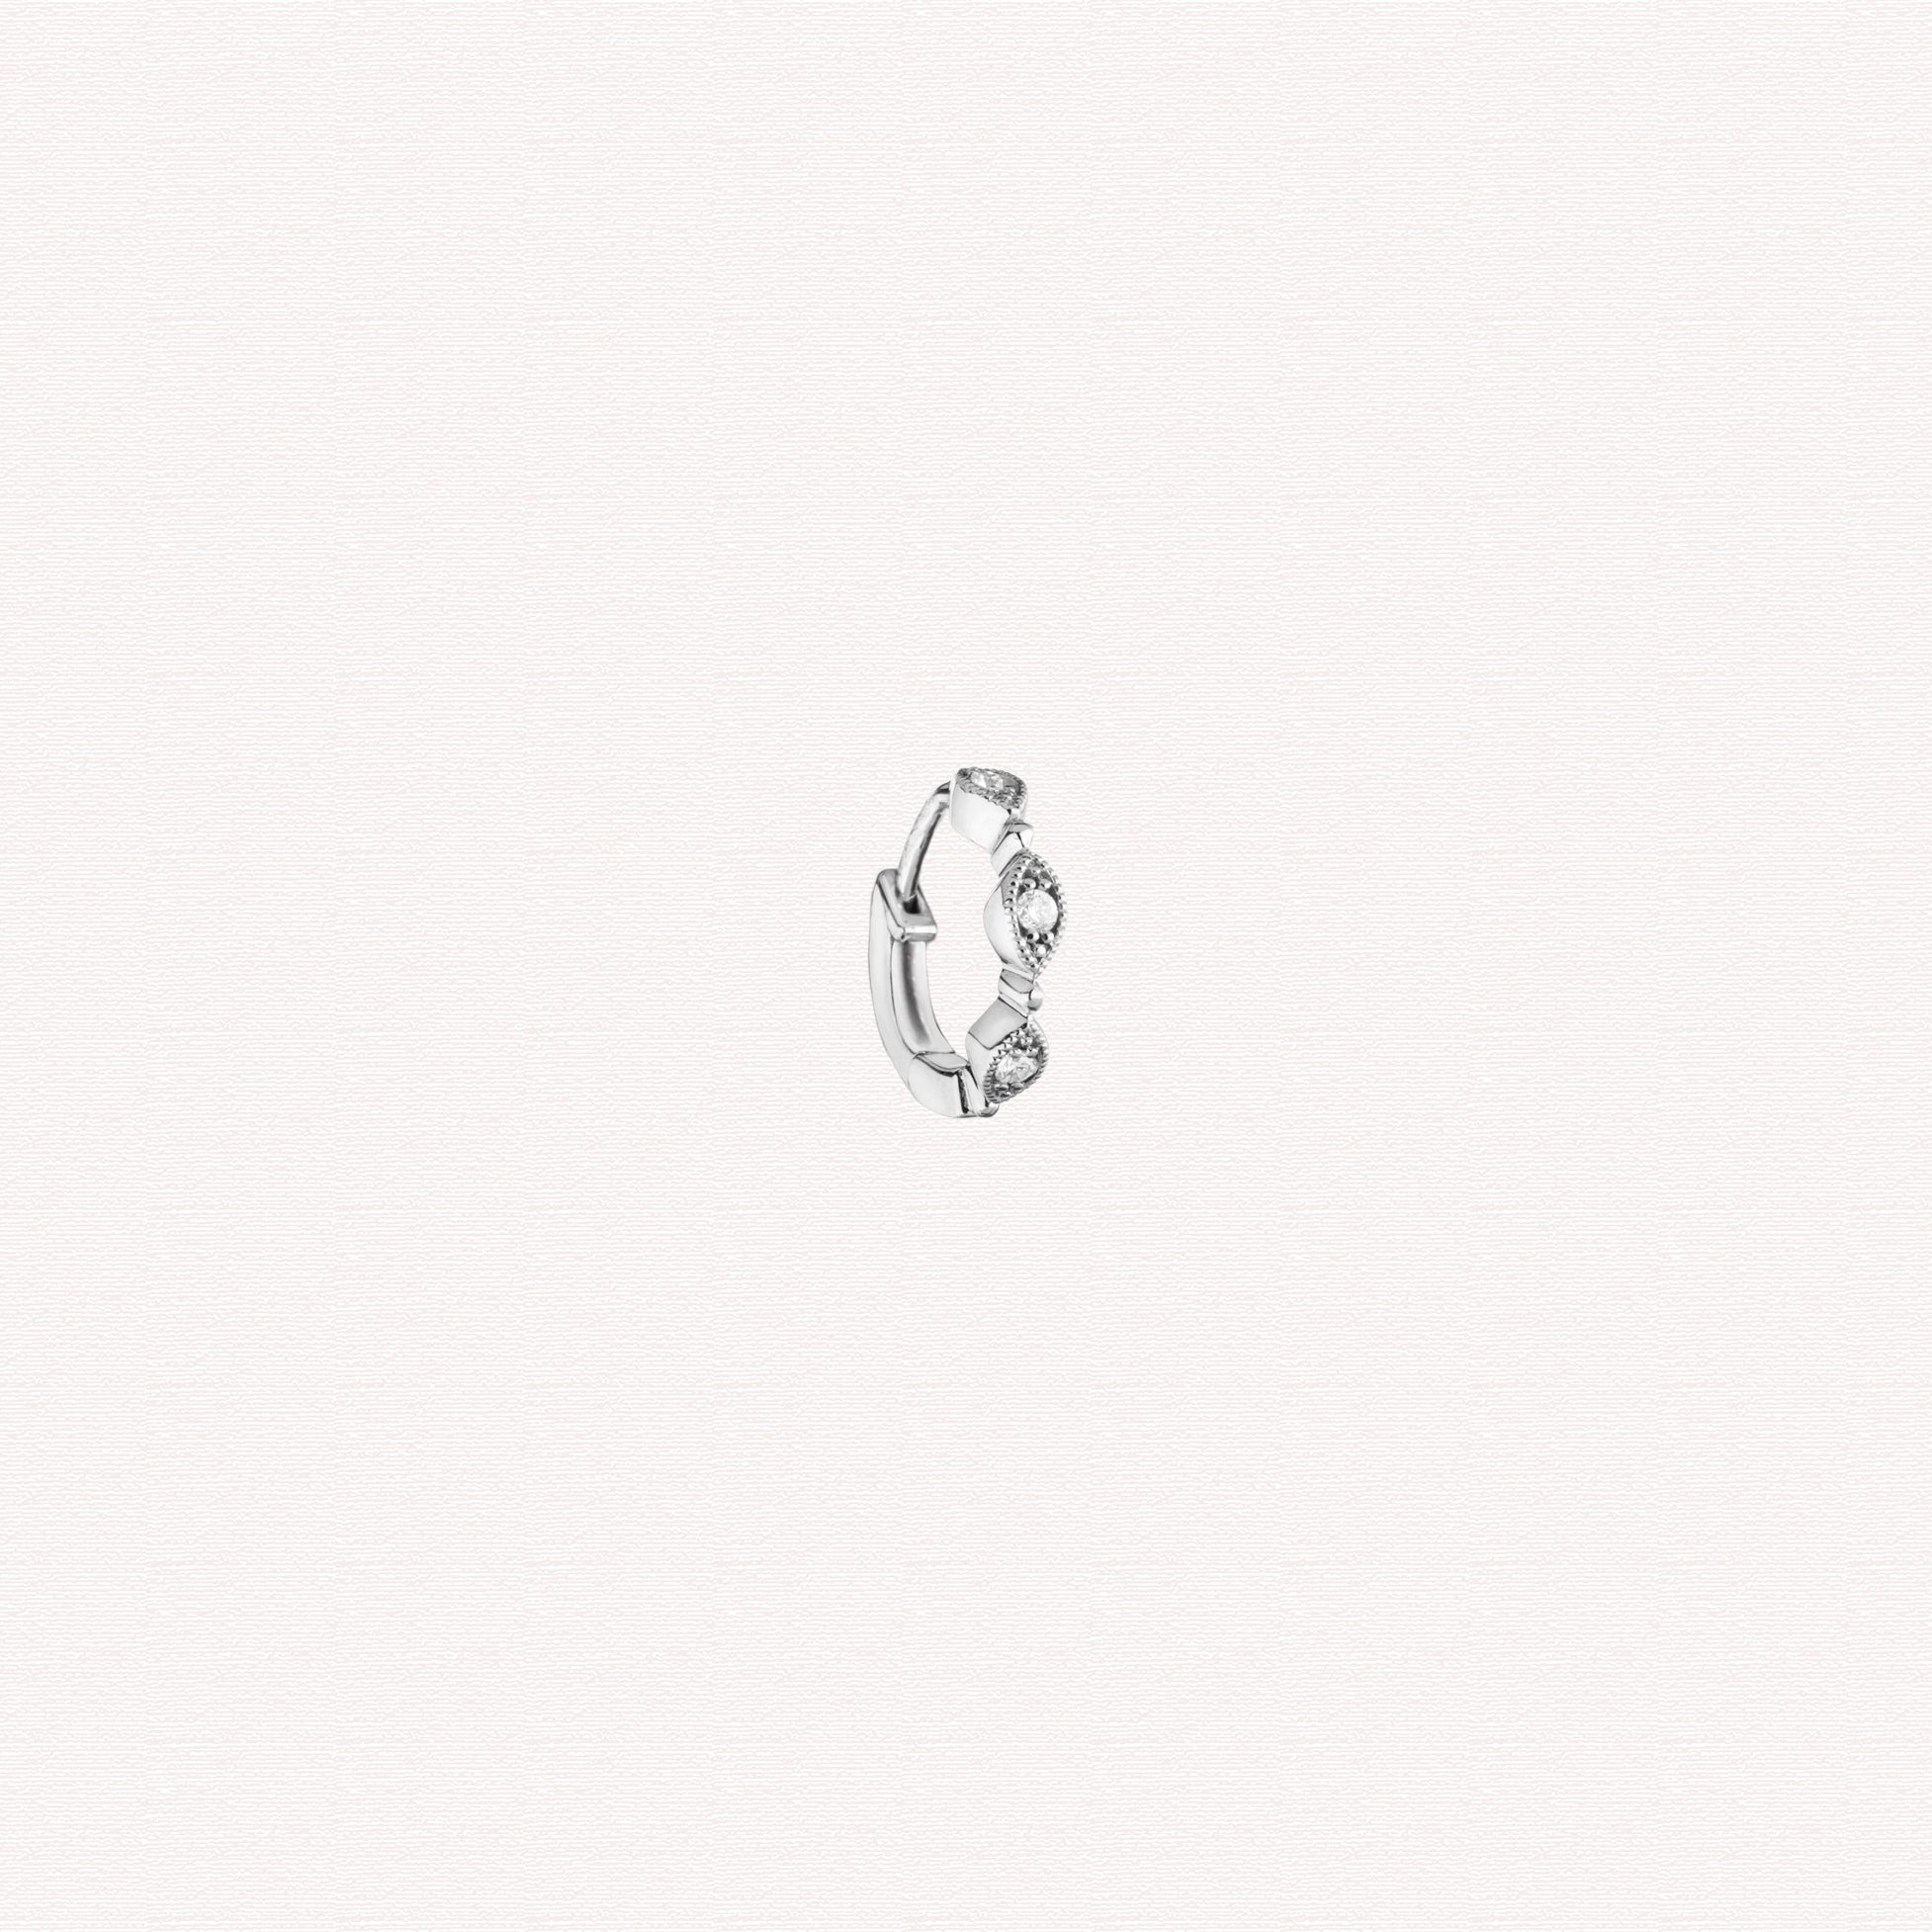 Single earring - Yasmine piercing